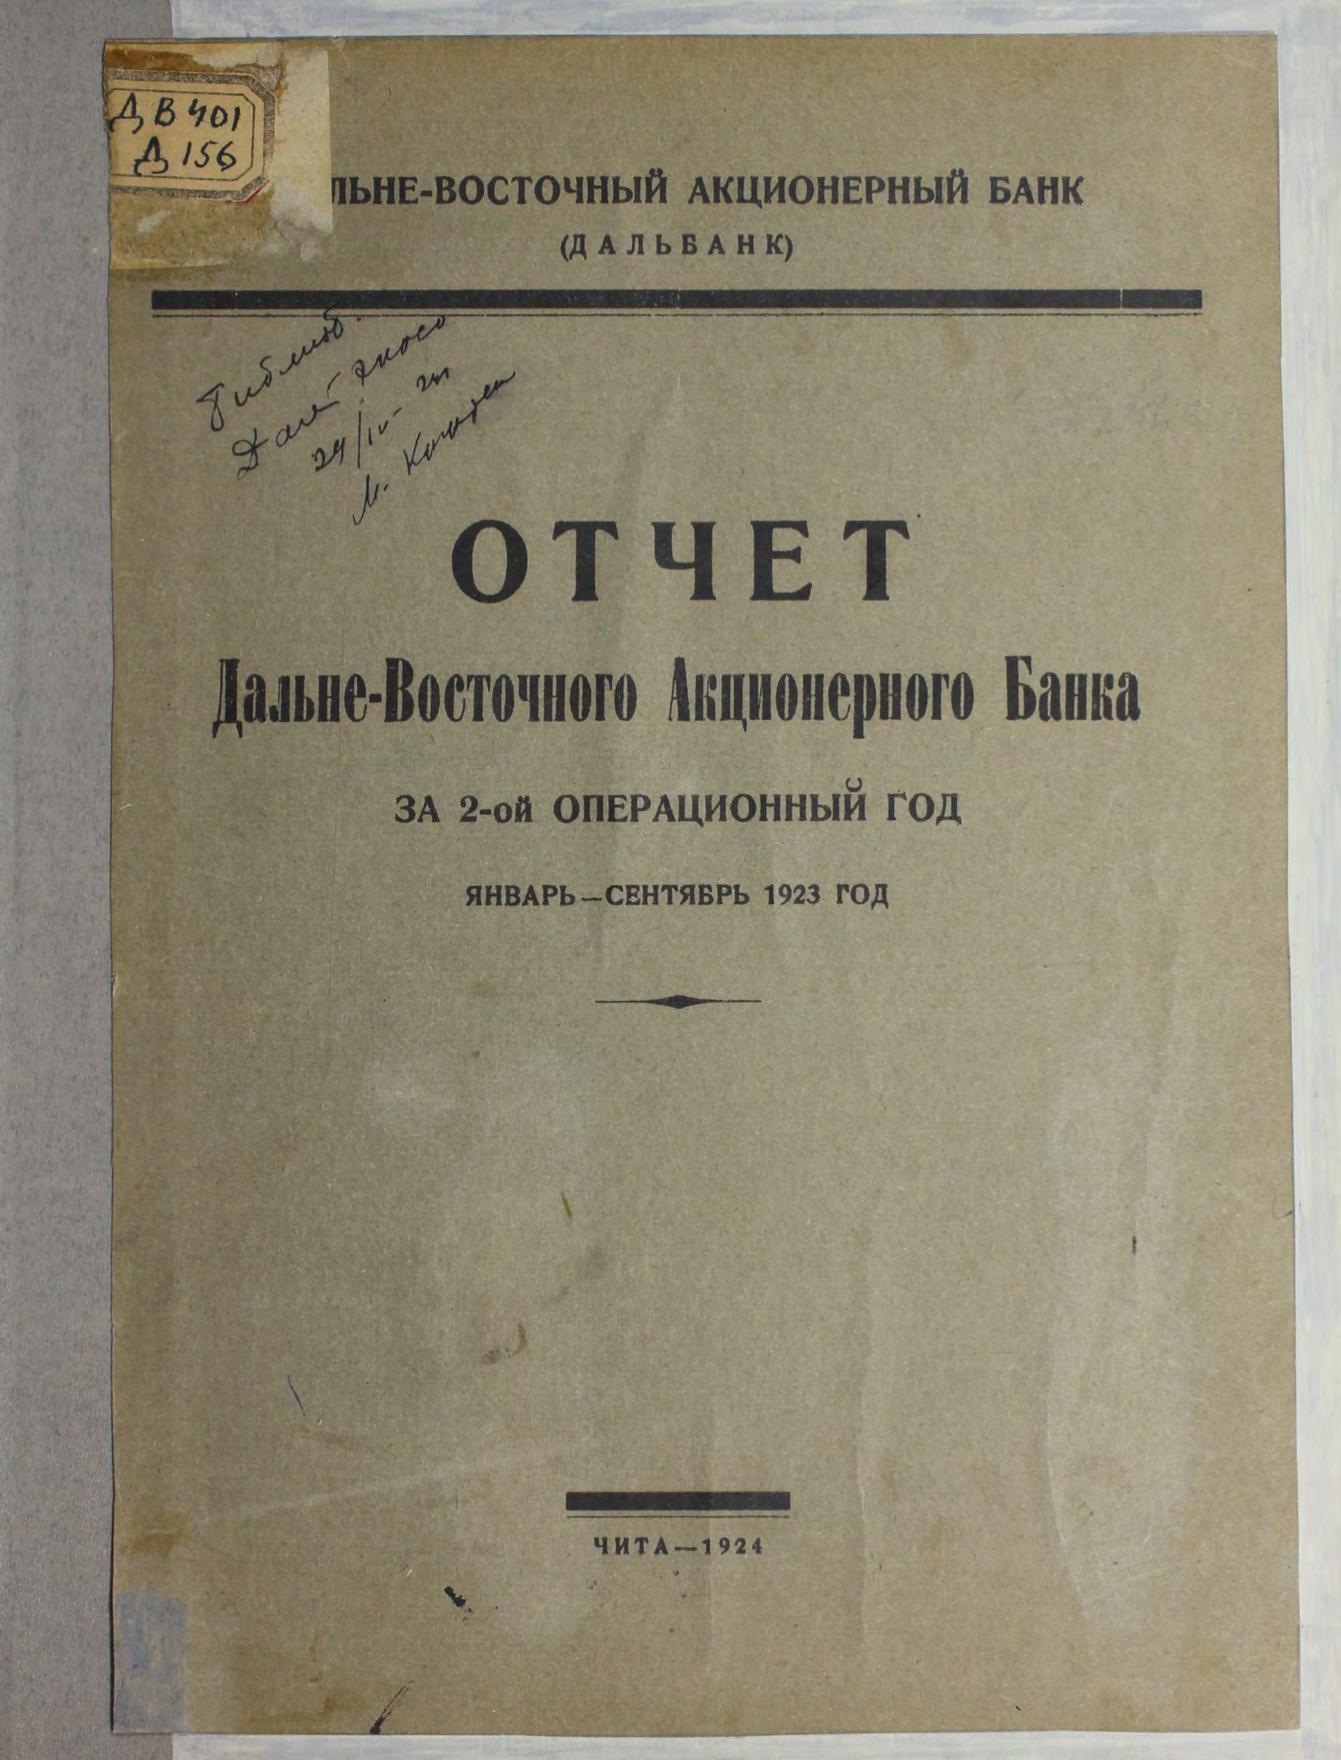 Дальневосточный Акционерный банк. Отчет за 2-й операционный год (январь-сентябрь 1923 год).